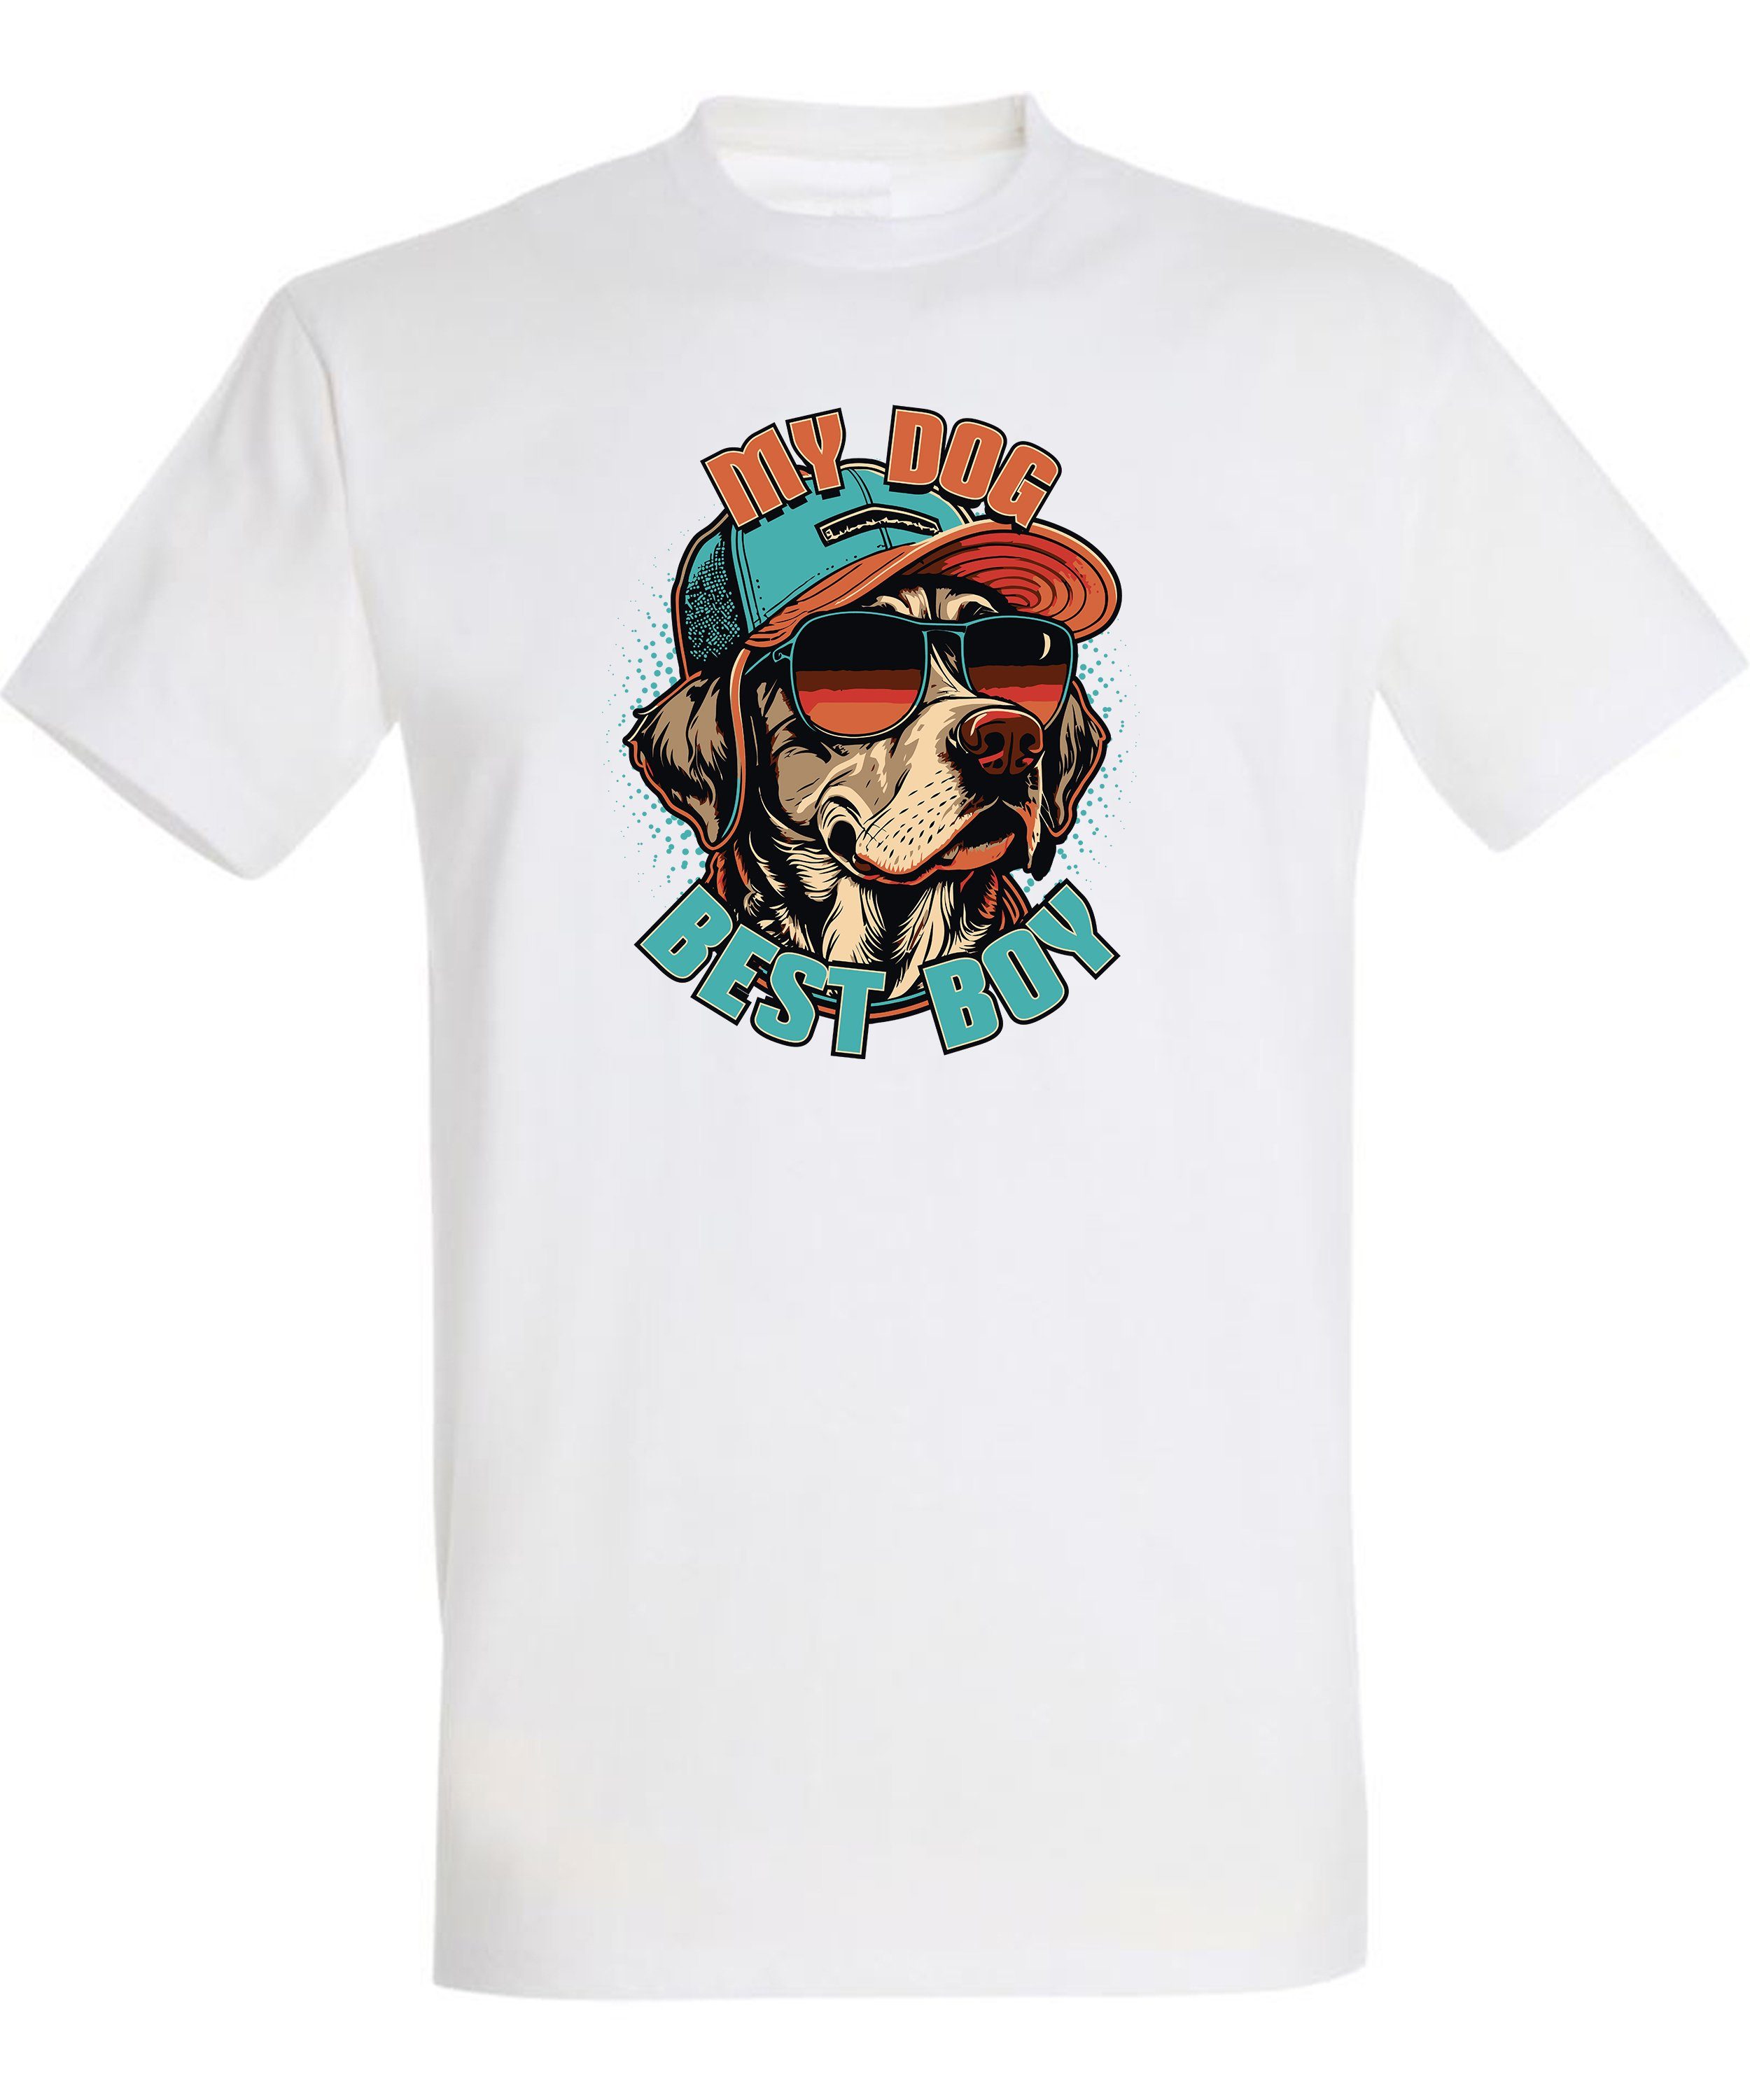 MyDesign24 T-Shirt Shirt Cap mit Hund Regular Hunde weiss - Print Baumwollshirt i225 Fit, mit Aufdruck Sonnenbrille Cooler und Herren